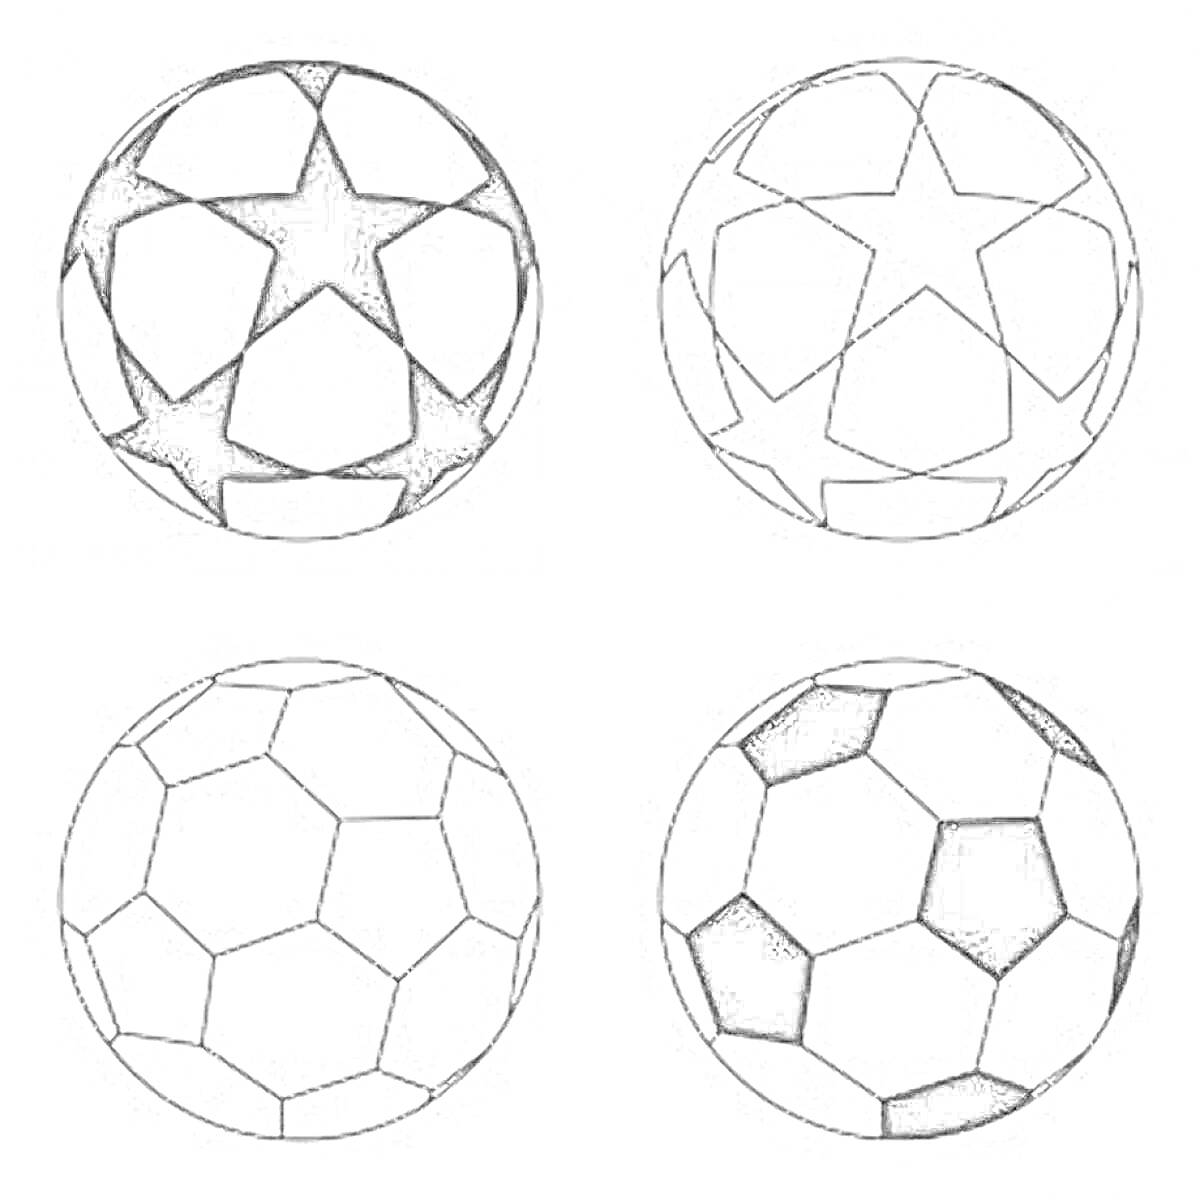 РаскраскаЧетыре мяча Найк с разными узорами - два с пятиконечными звездами и два с шестиугольниками.